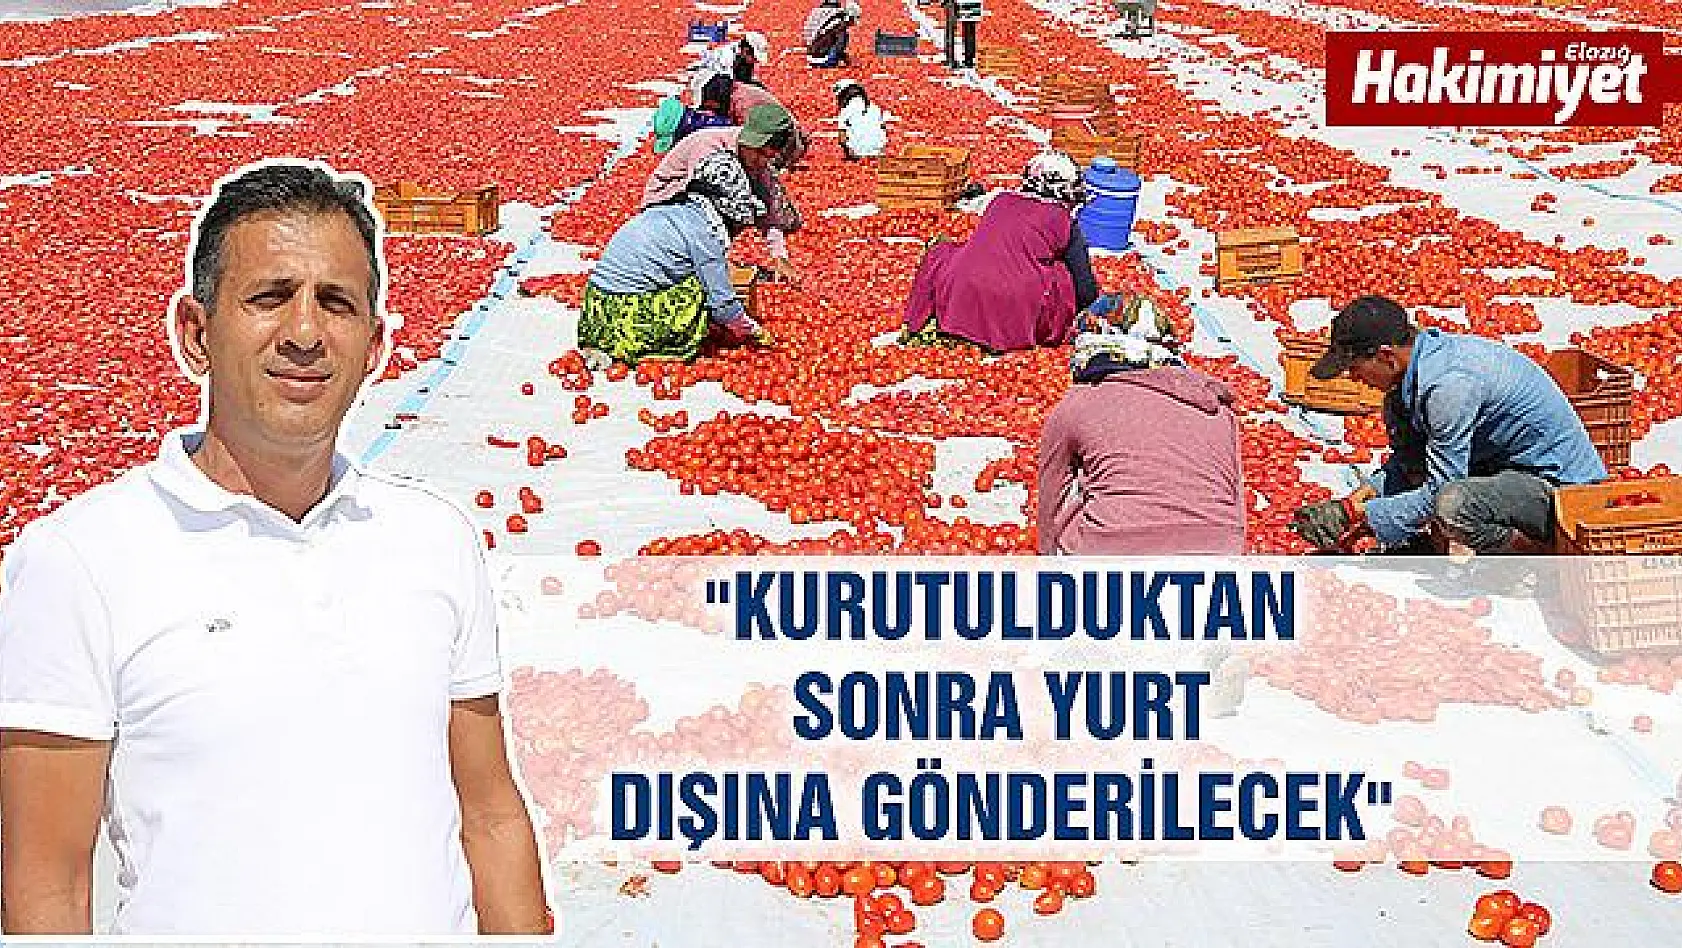 Tunceli'den Avrupa'ya kuru domates ihracatı